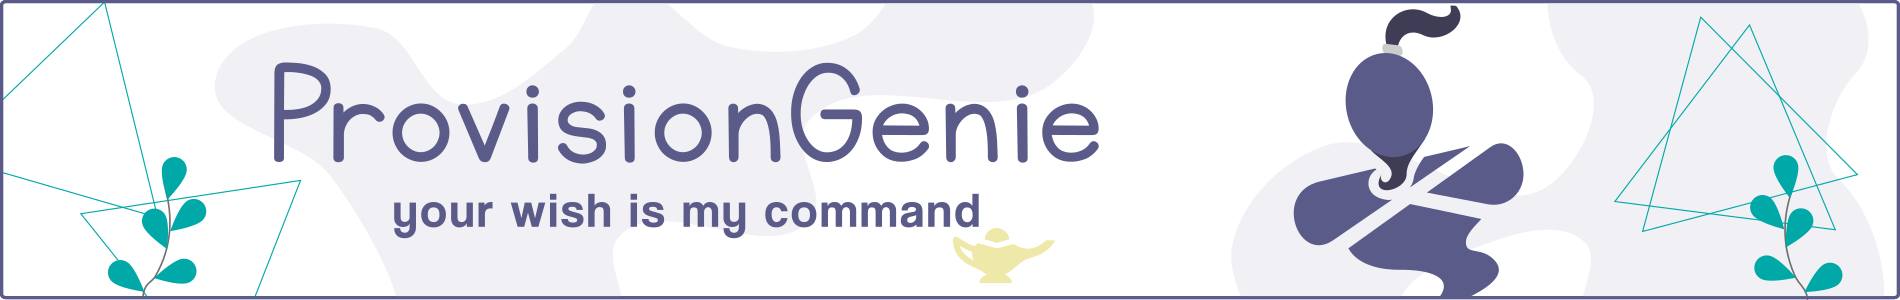 Genie Header image